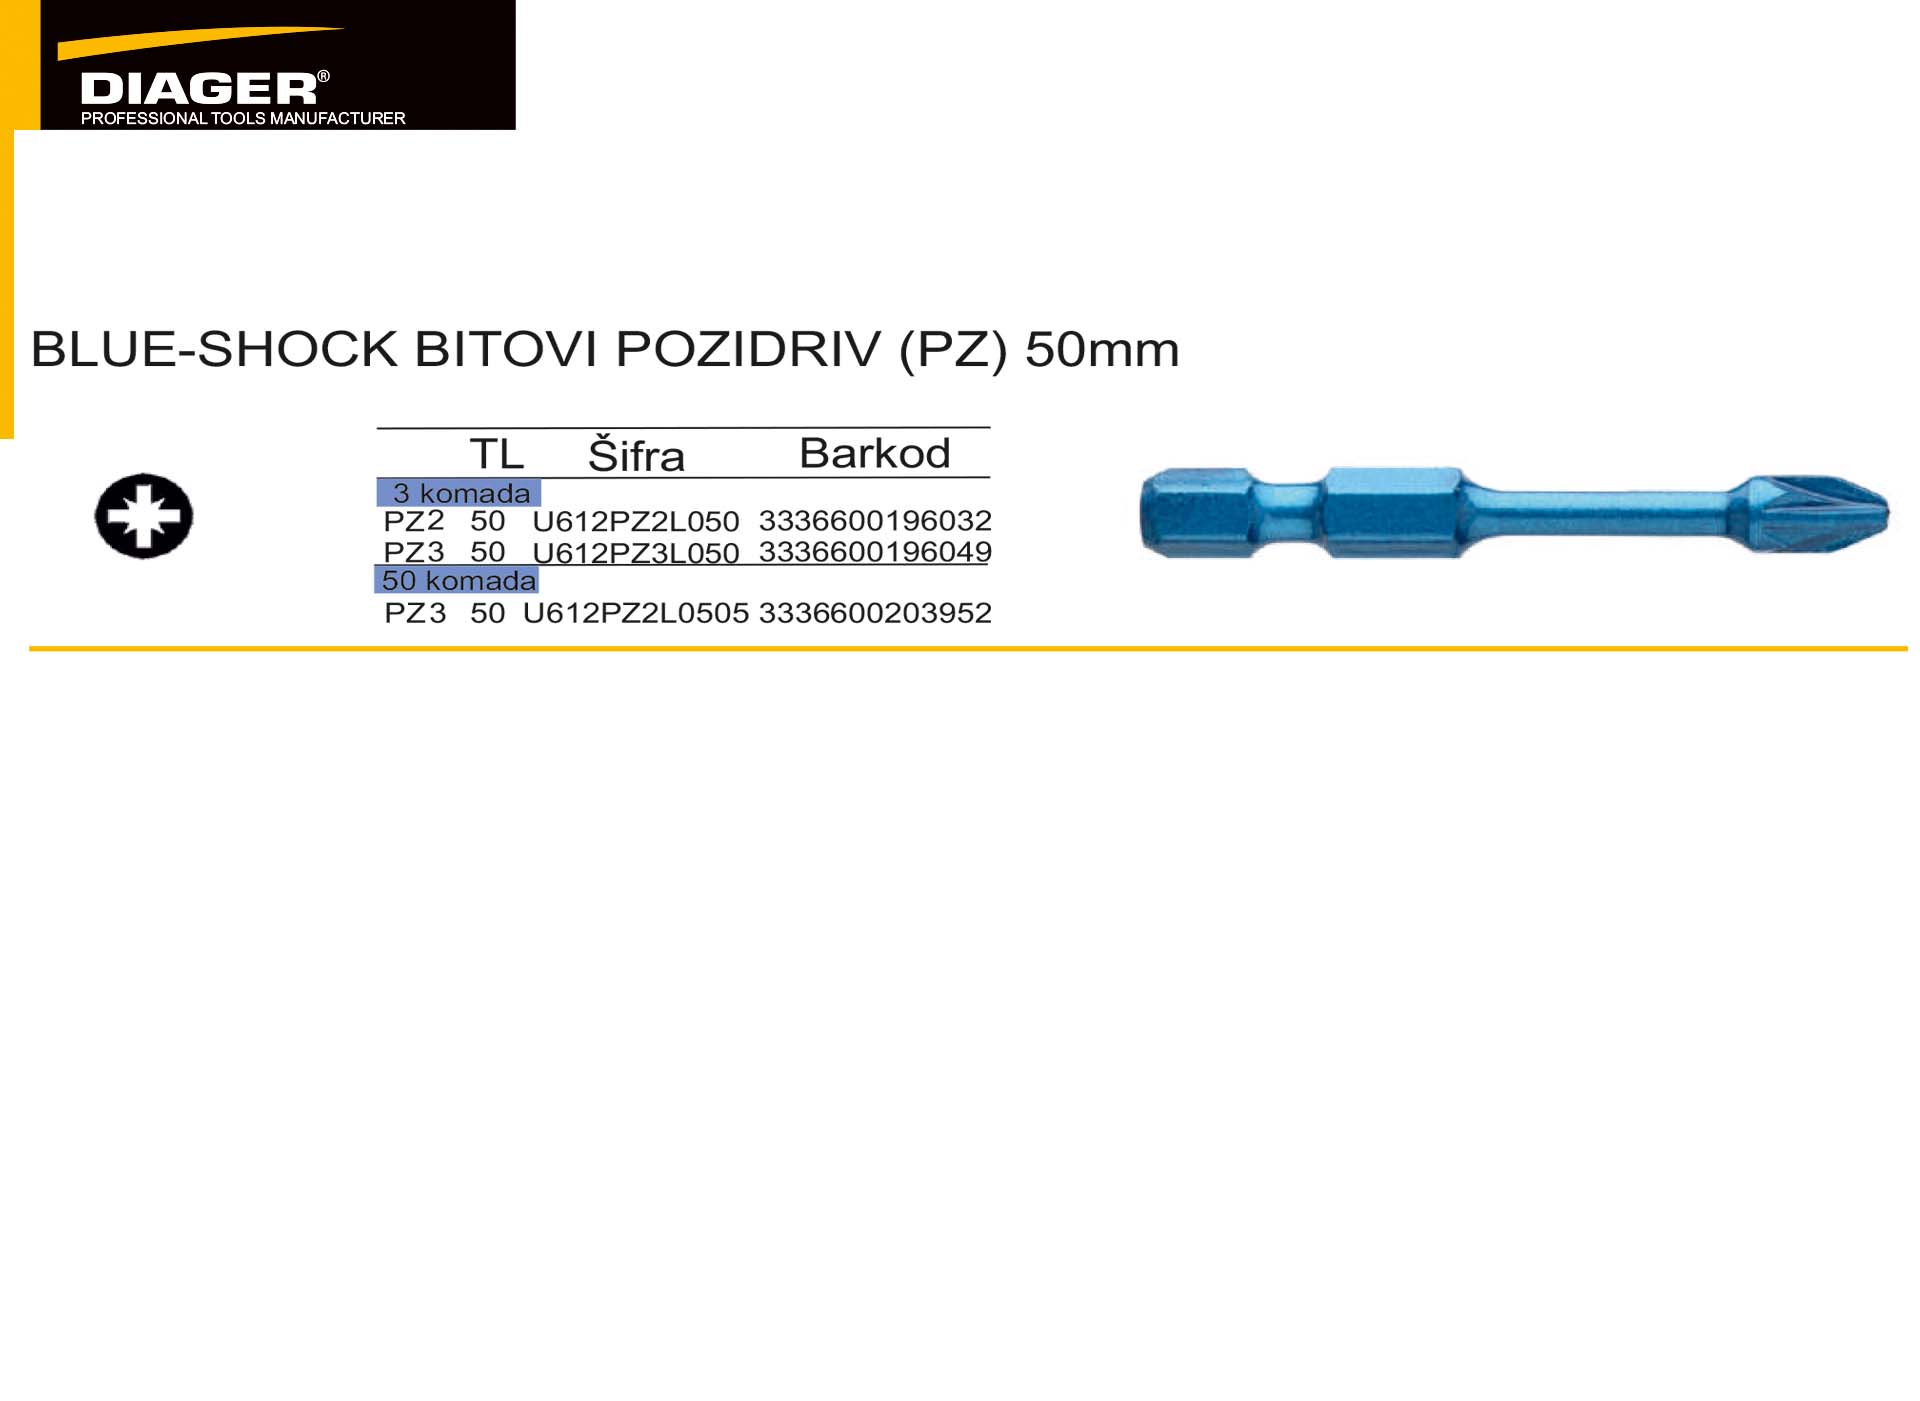  BLUE-SHOCK BITOVI POZIDRIV (PZ) 50mm